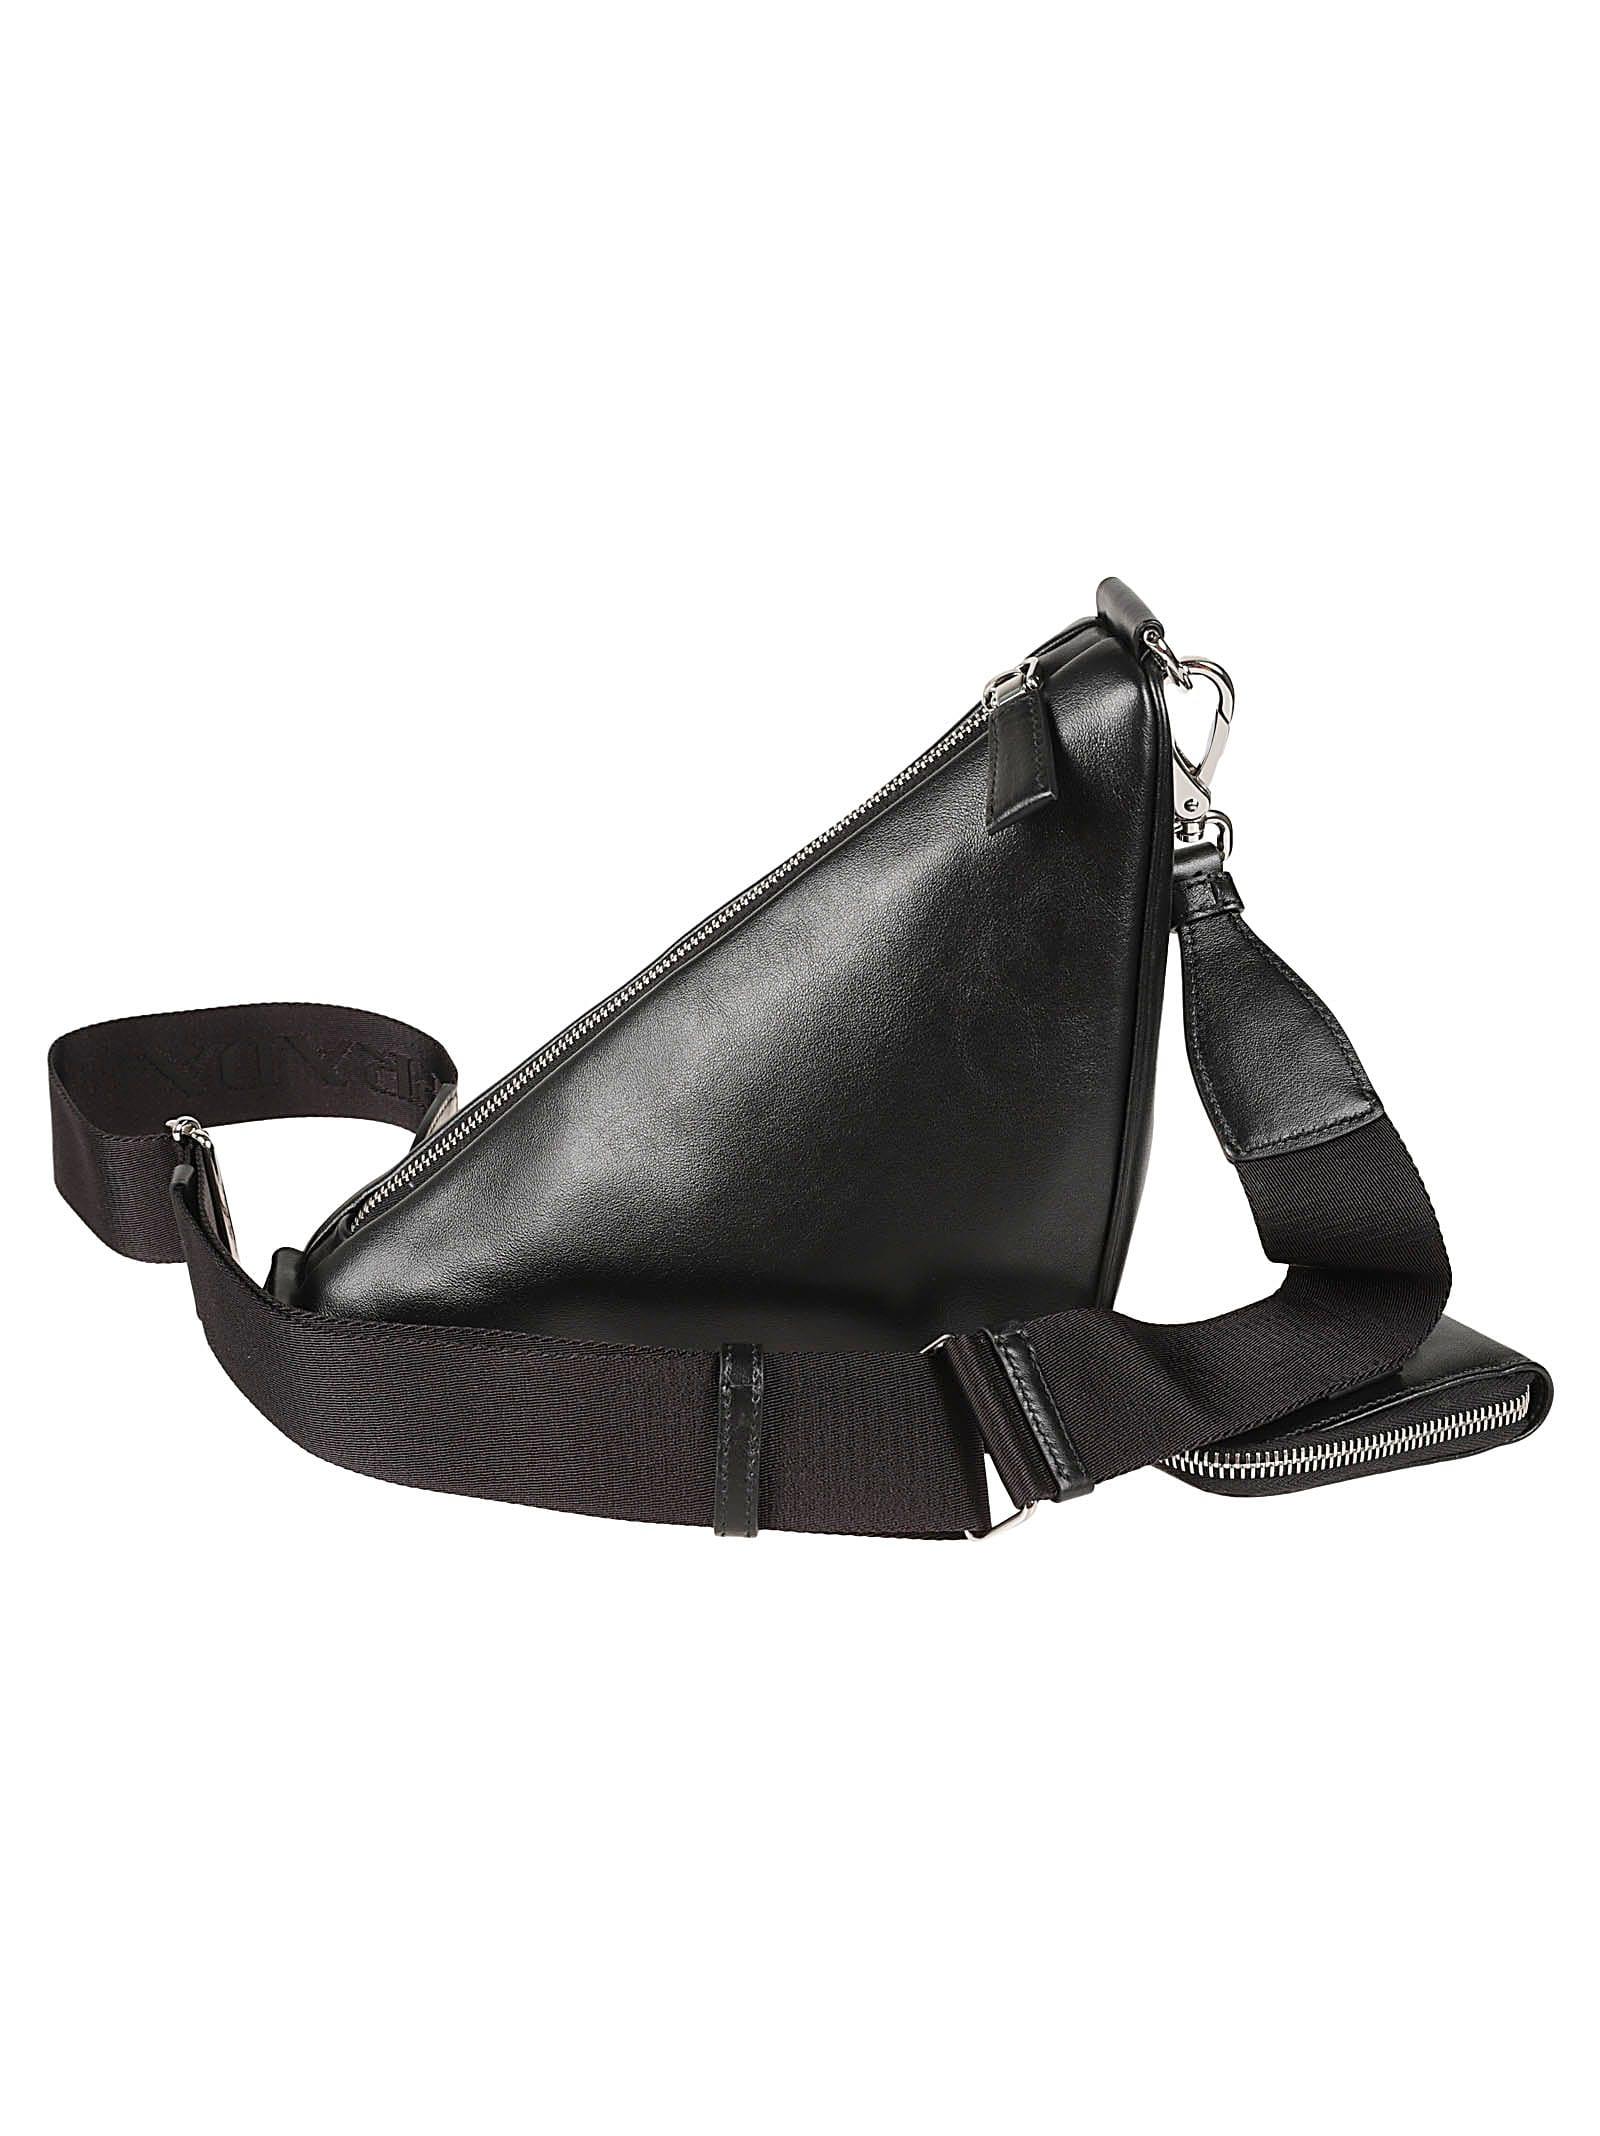 Picard Leather Bag -  Sweden